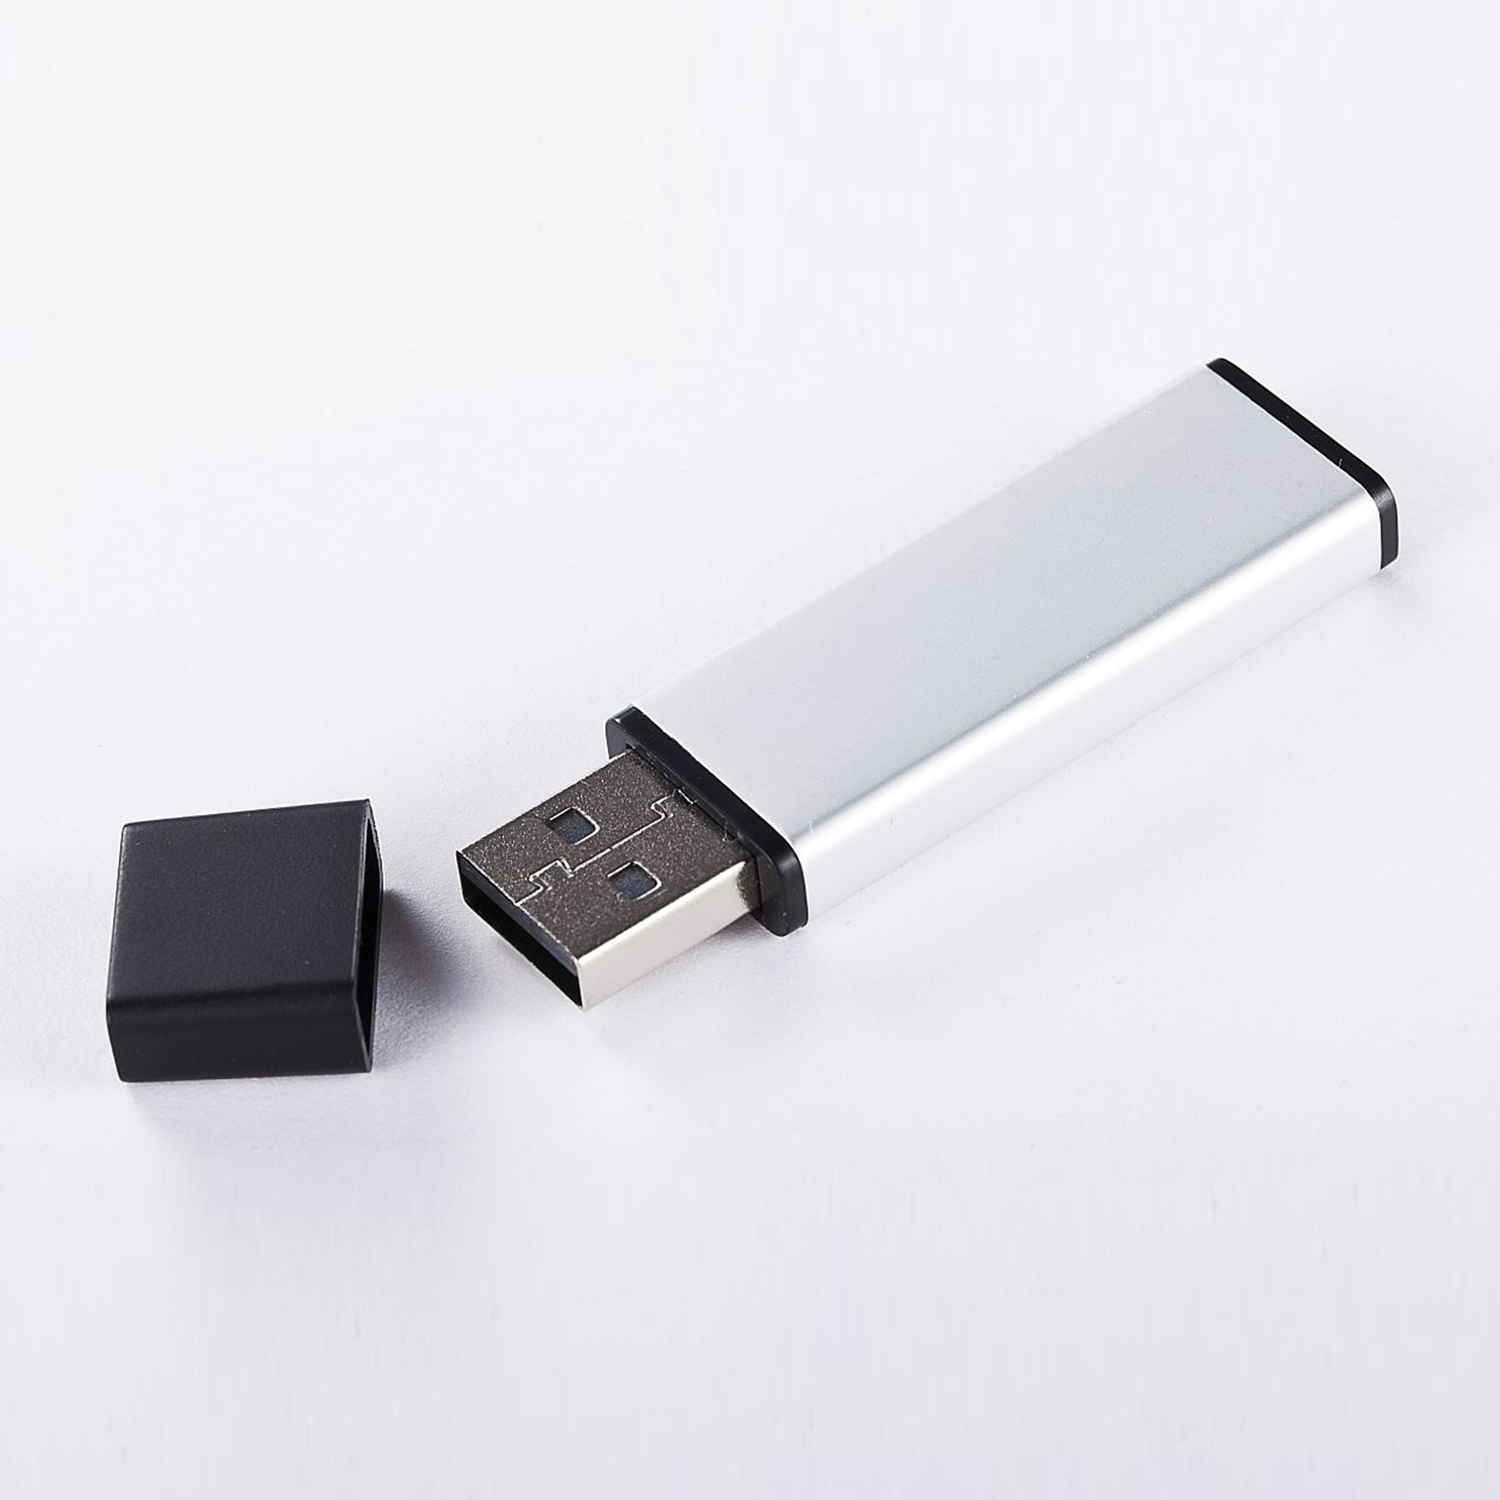 16 XLYNE USB USB GB 16 (ALUMINIUM, 2.0 Stick - GB)